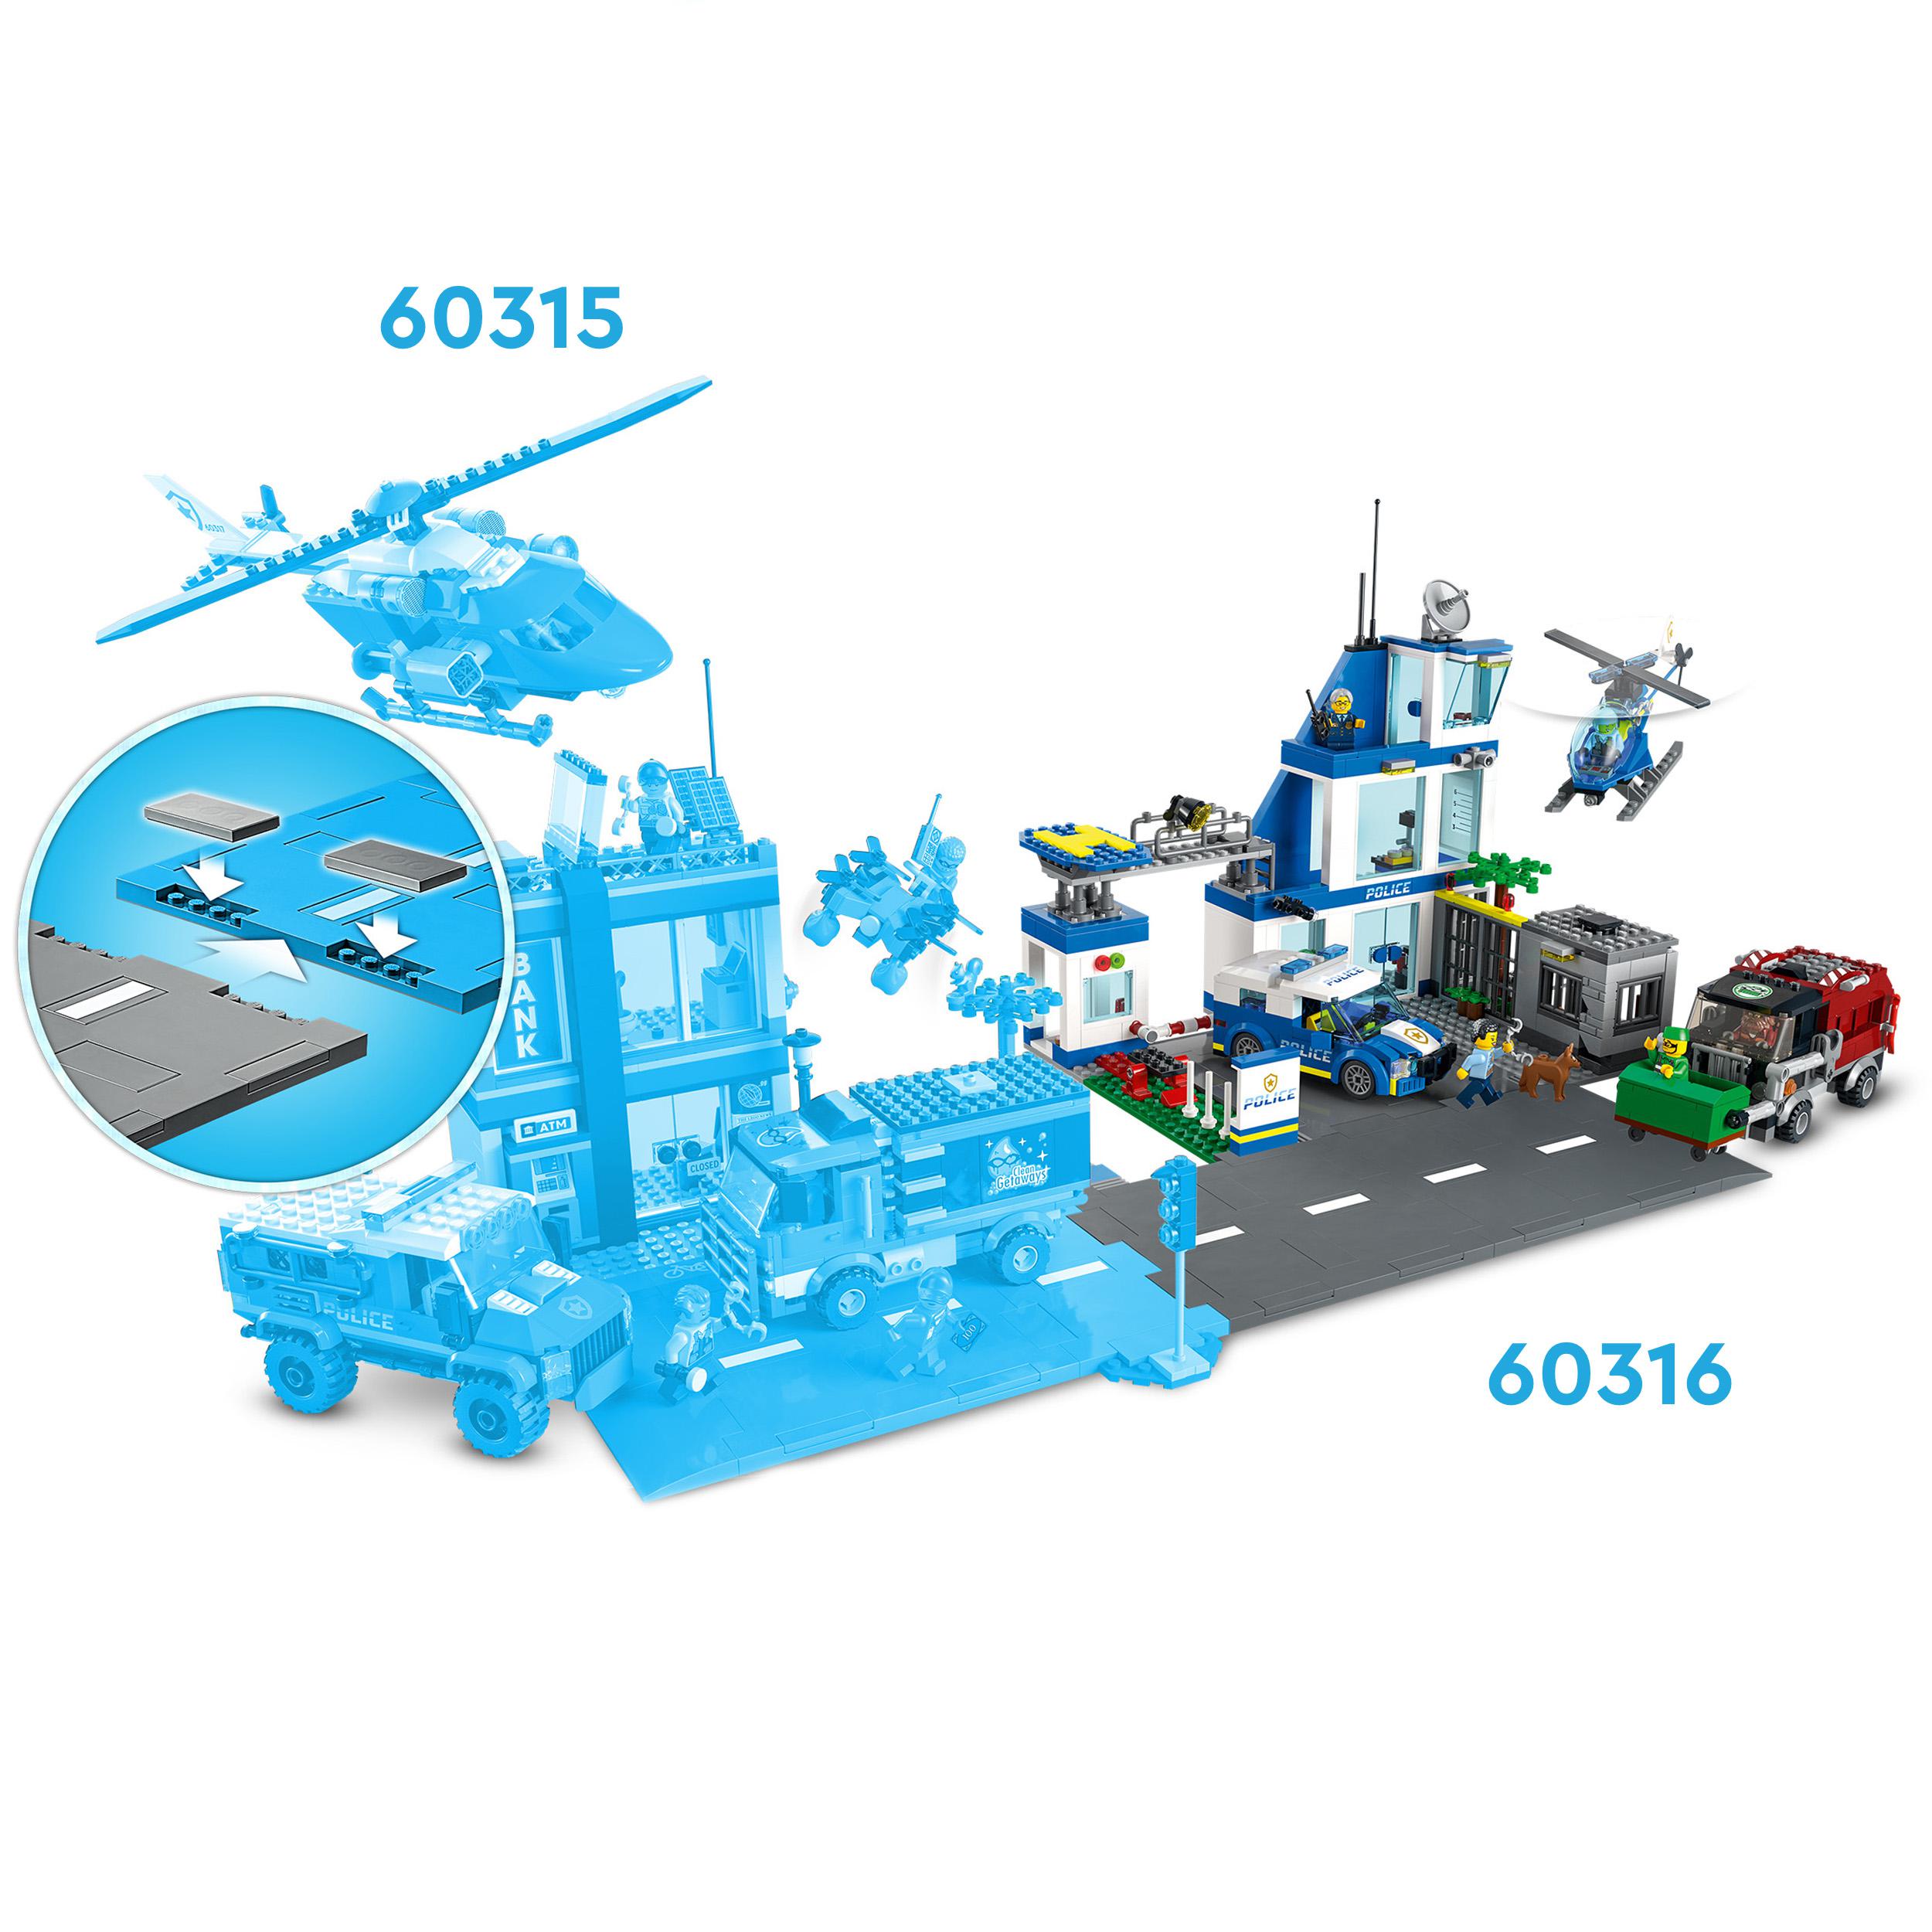 LEGO City Police Stazione di Polizia, con Camion della Spazzatura ed Elicottero 60316, , large